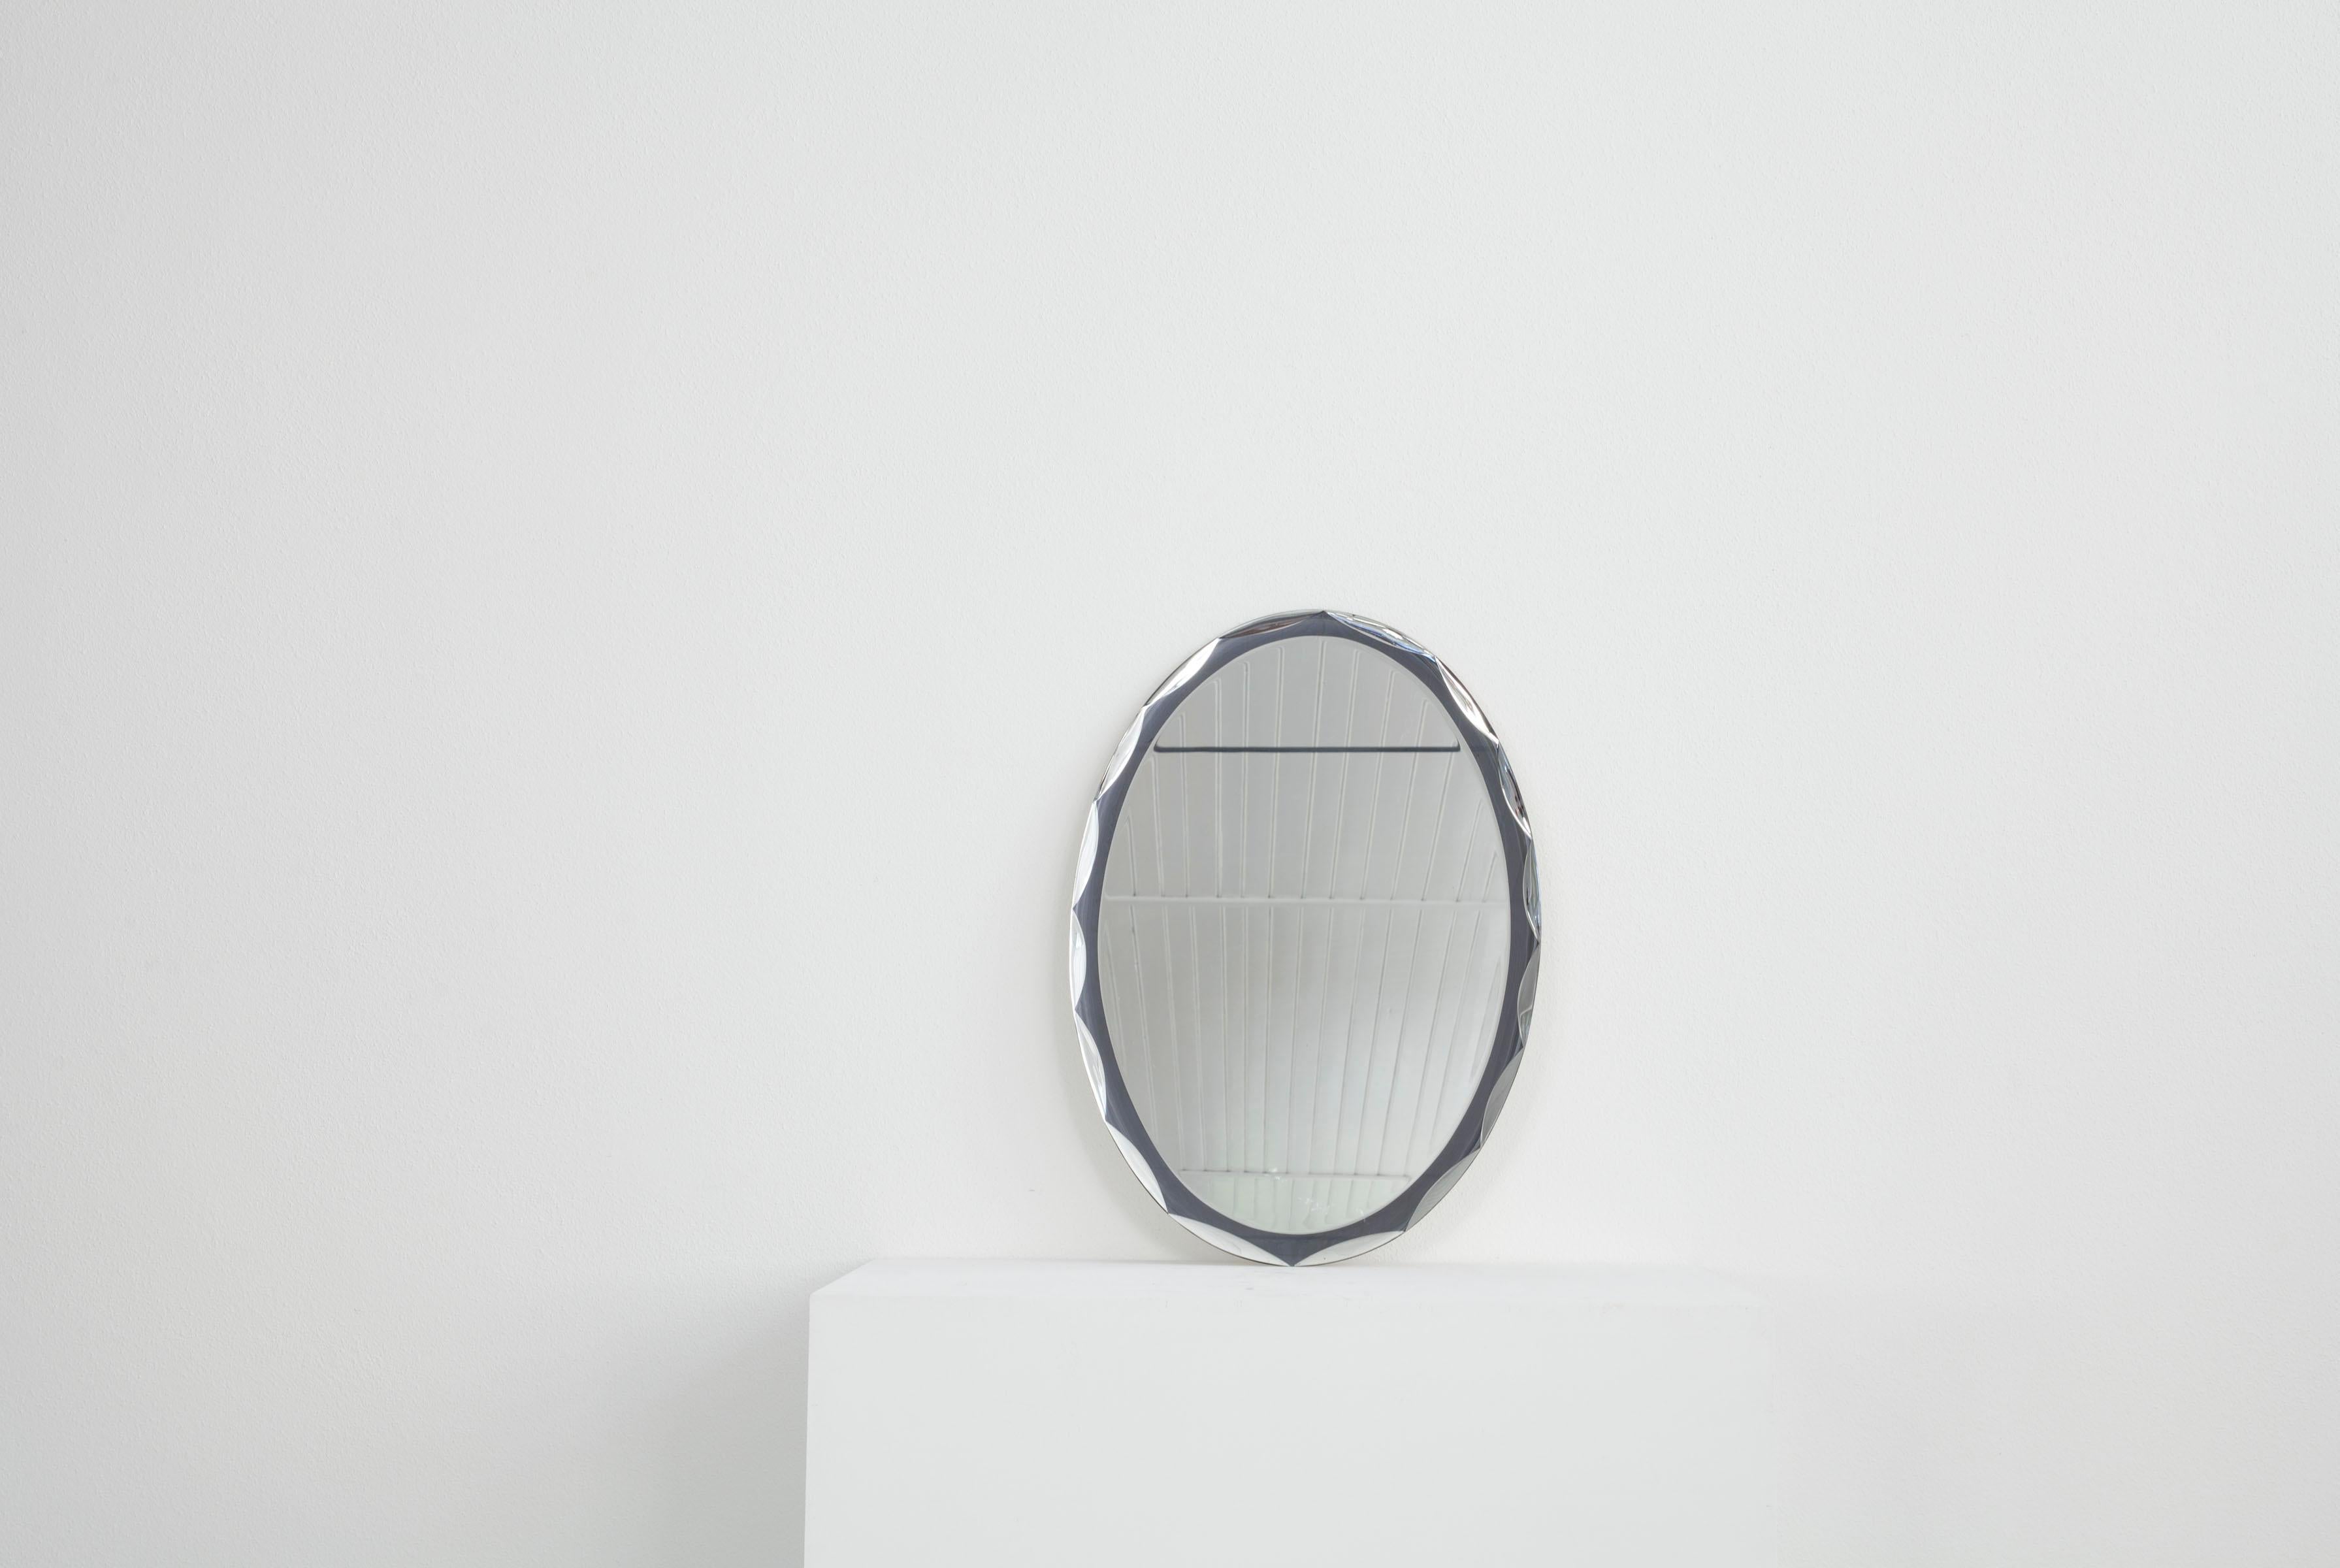 Ce miroir mural italien ovale date des années 1960. La particularité de ce miroir réside dans son cadre, qui est également en verre miroir, et qui présente un motif dans le cadre lui-même. Le miroir est en bon état.

.